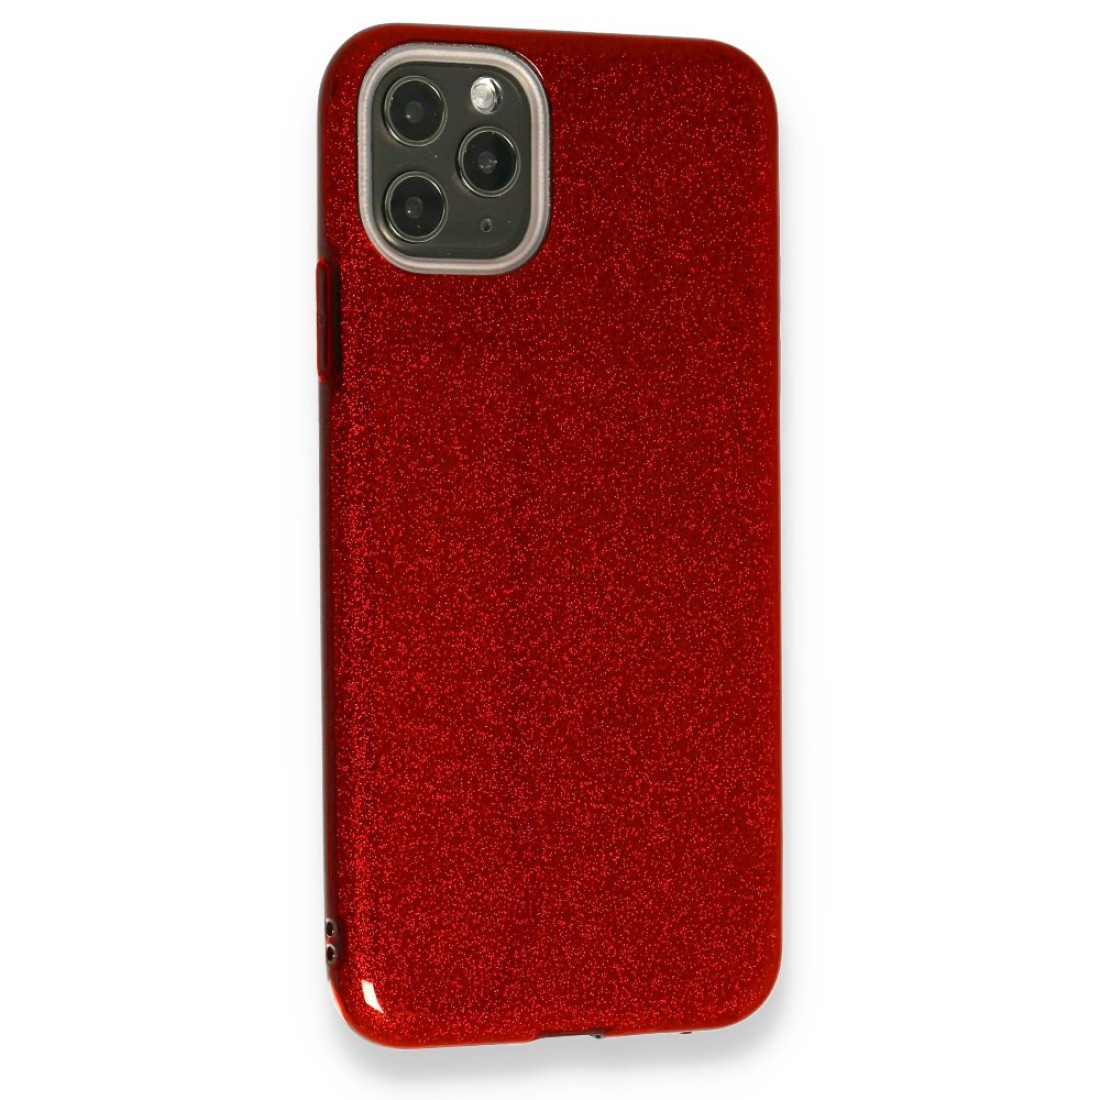 Apple iPhone 11 Pro Max Kılıf Simli Katmanlı Silikon - Kırmızı